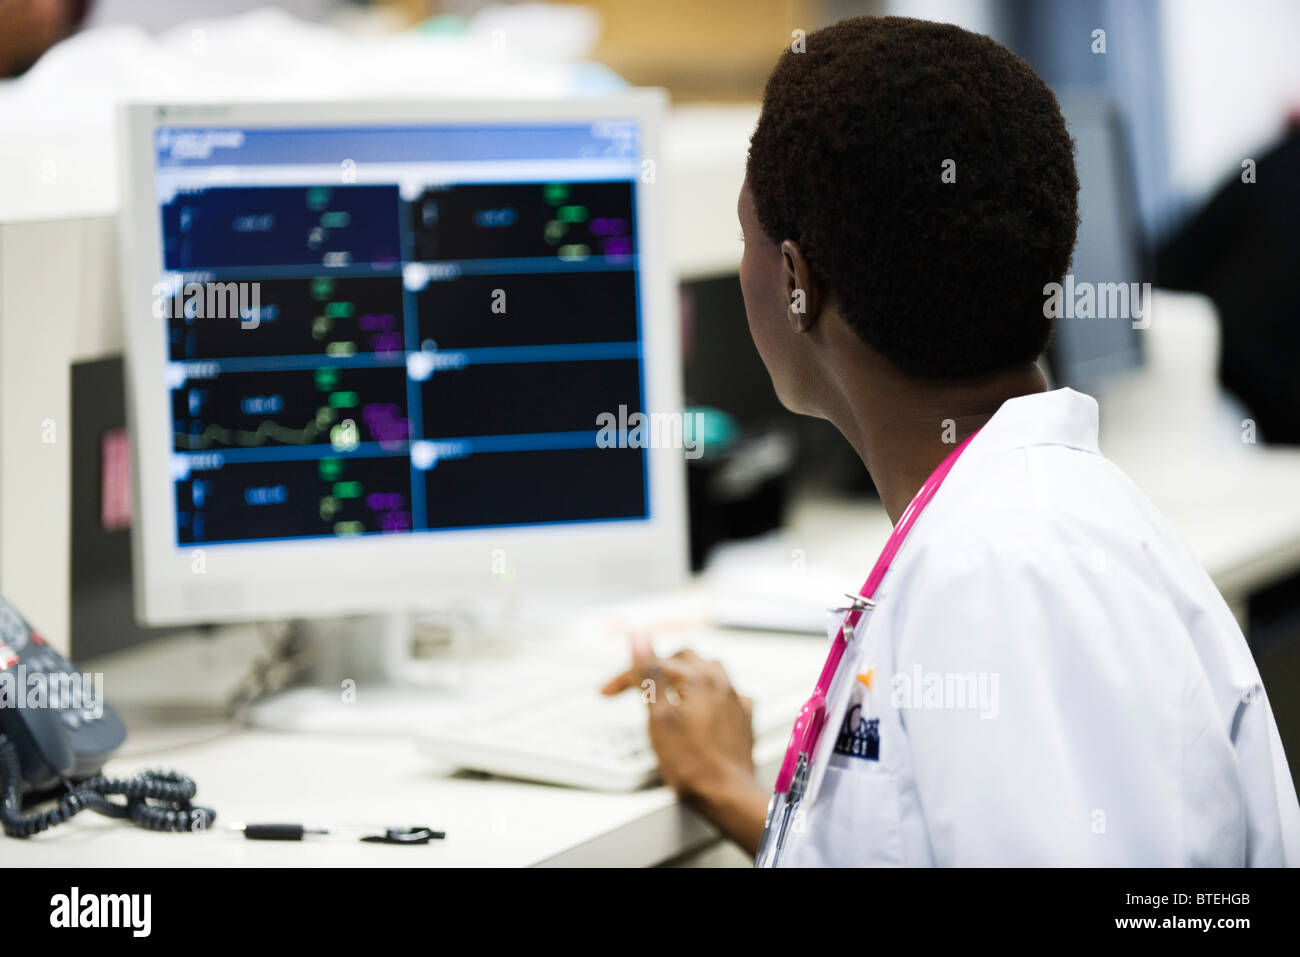 Trabajador sanitario mirando el monitor en el área de enfermería Foto de stock